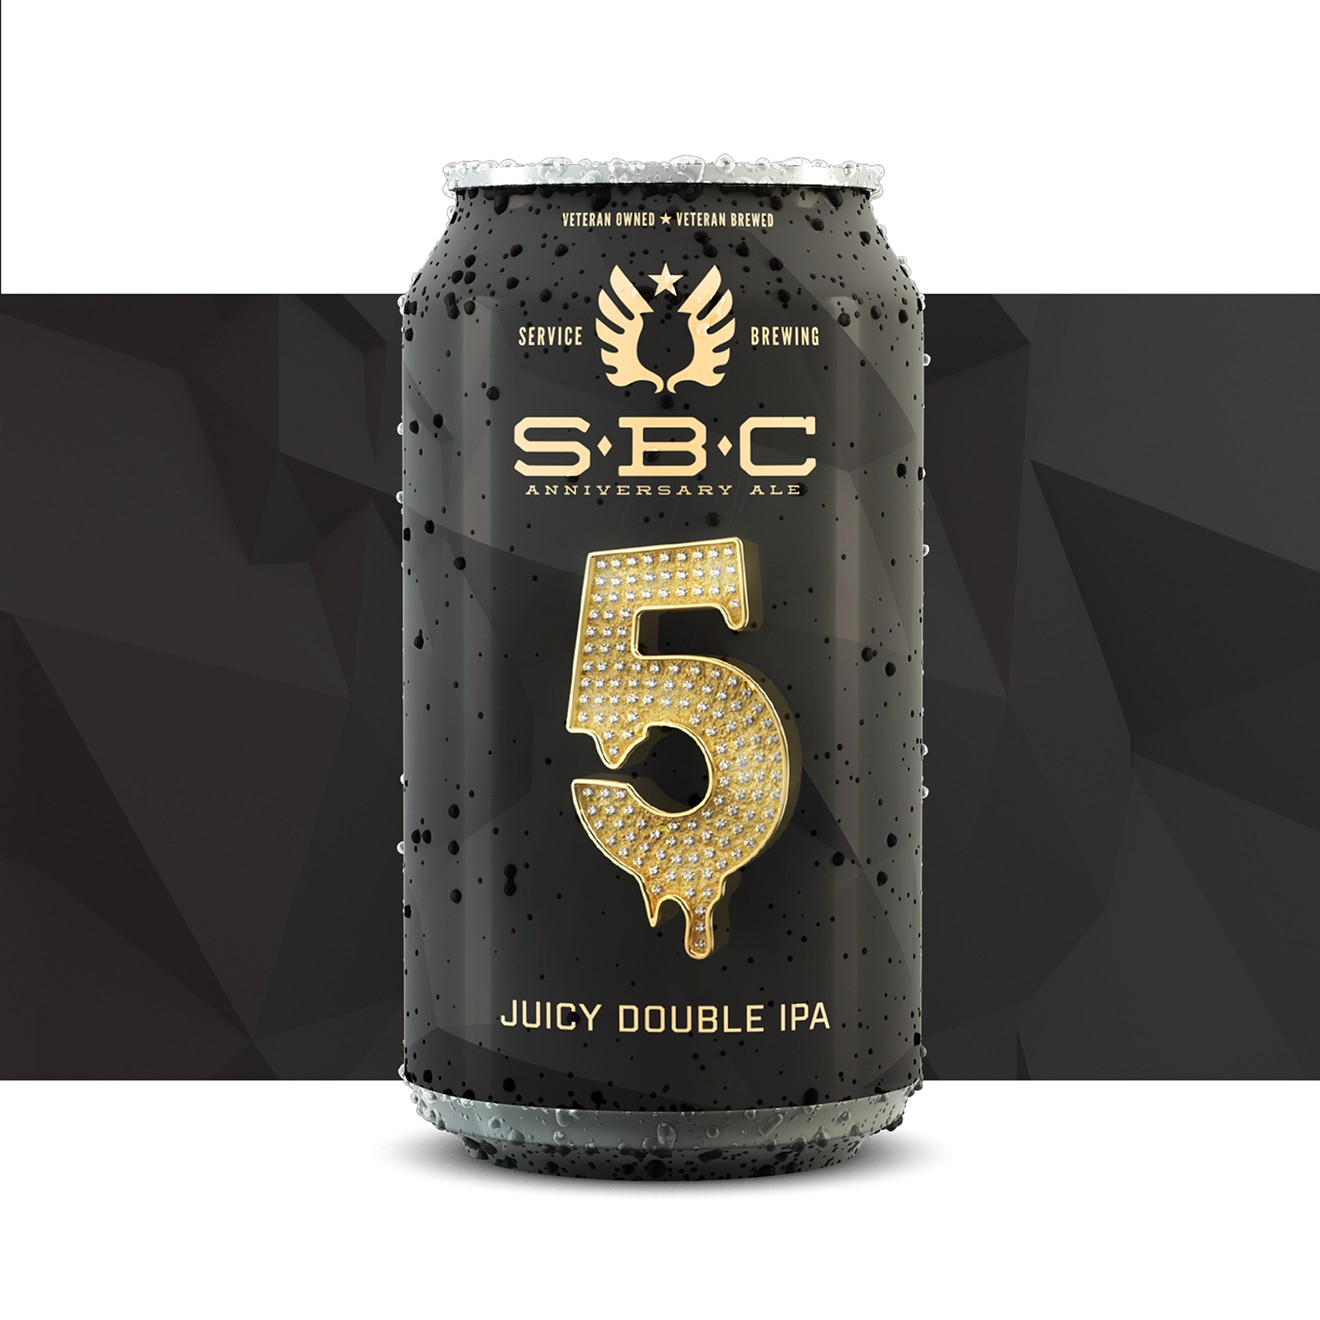 SBC 5 Juicy Double IPA